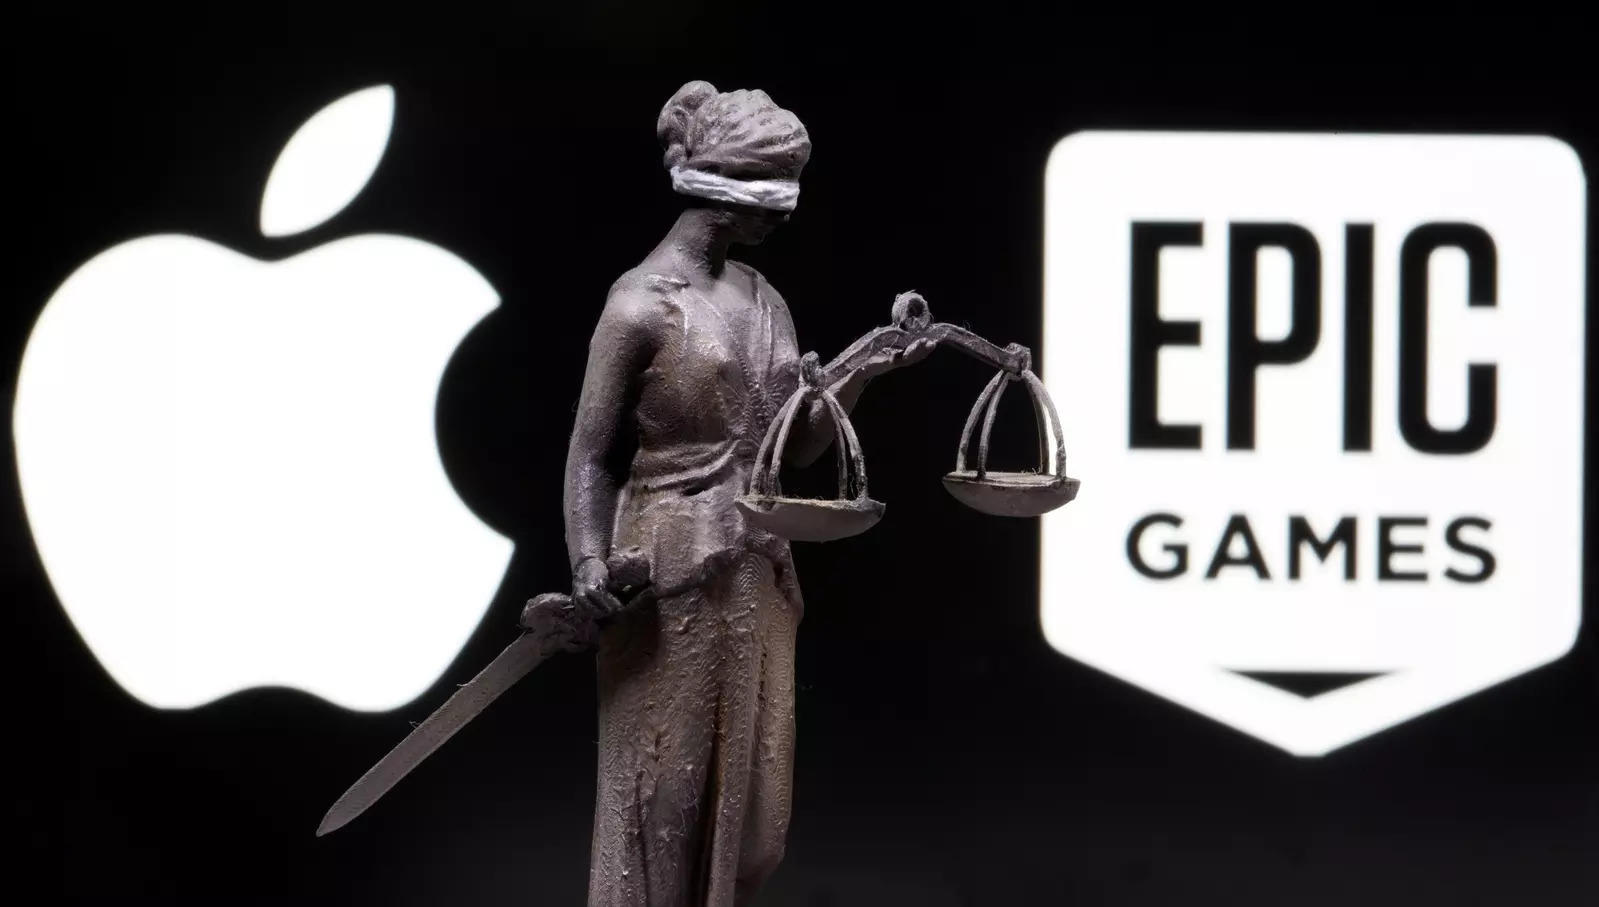 Apple Terminates Epic Games' App Store Account